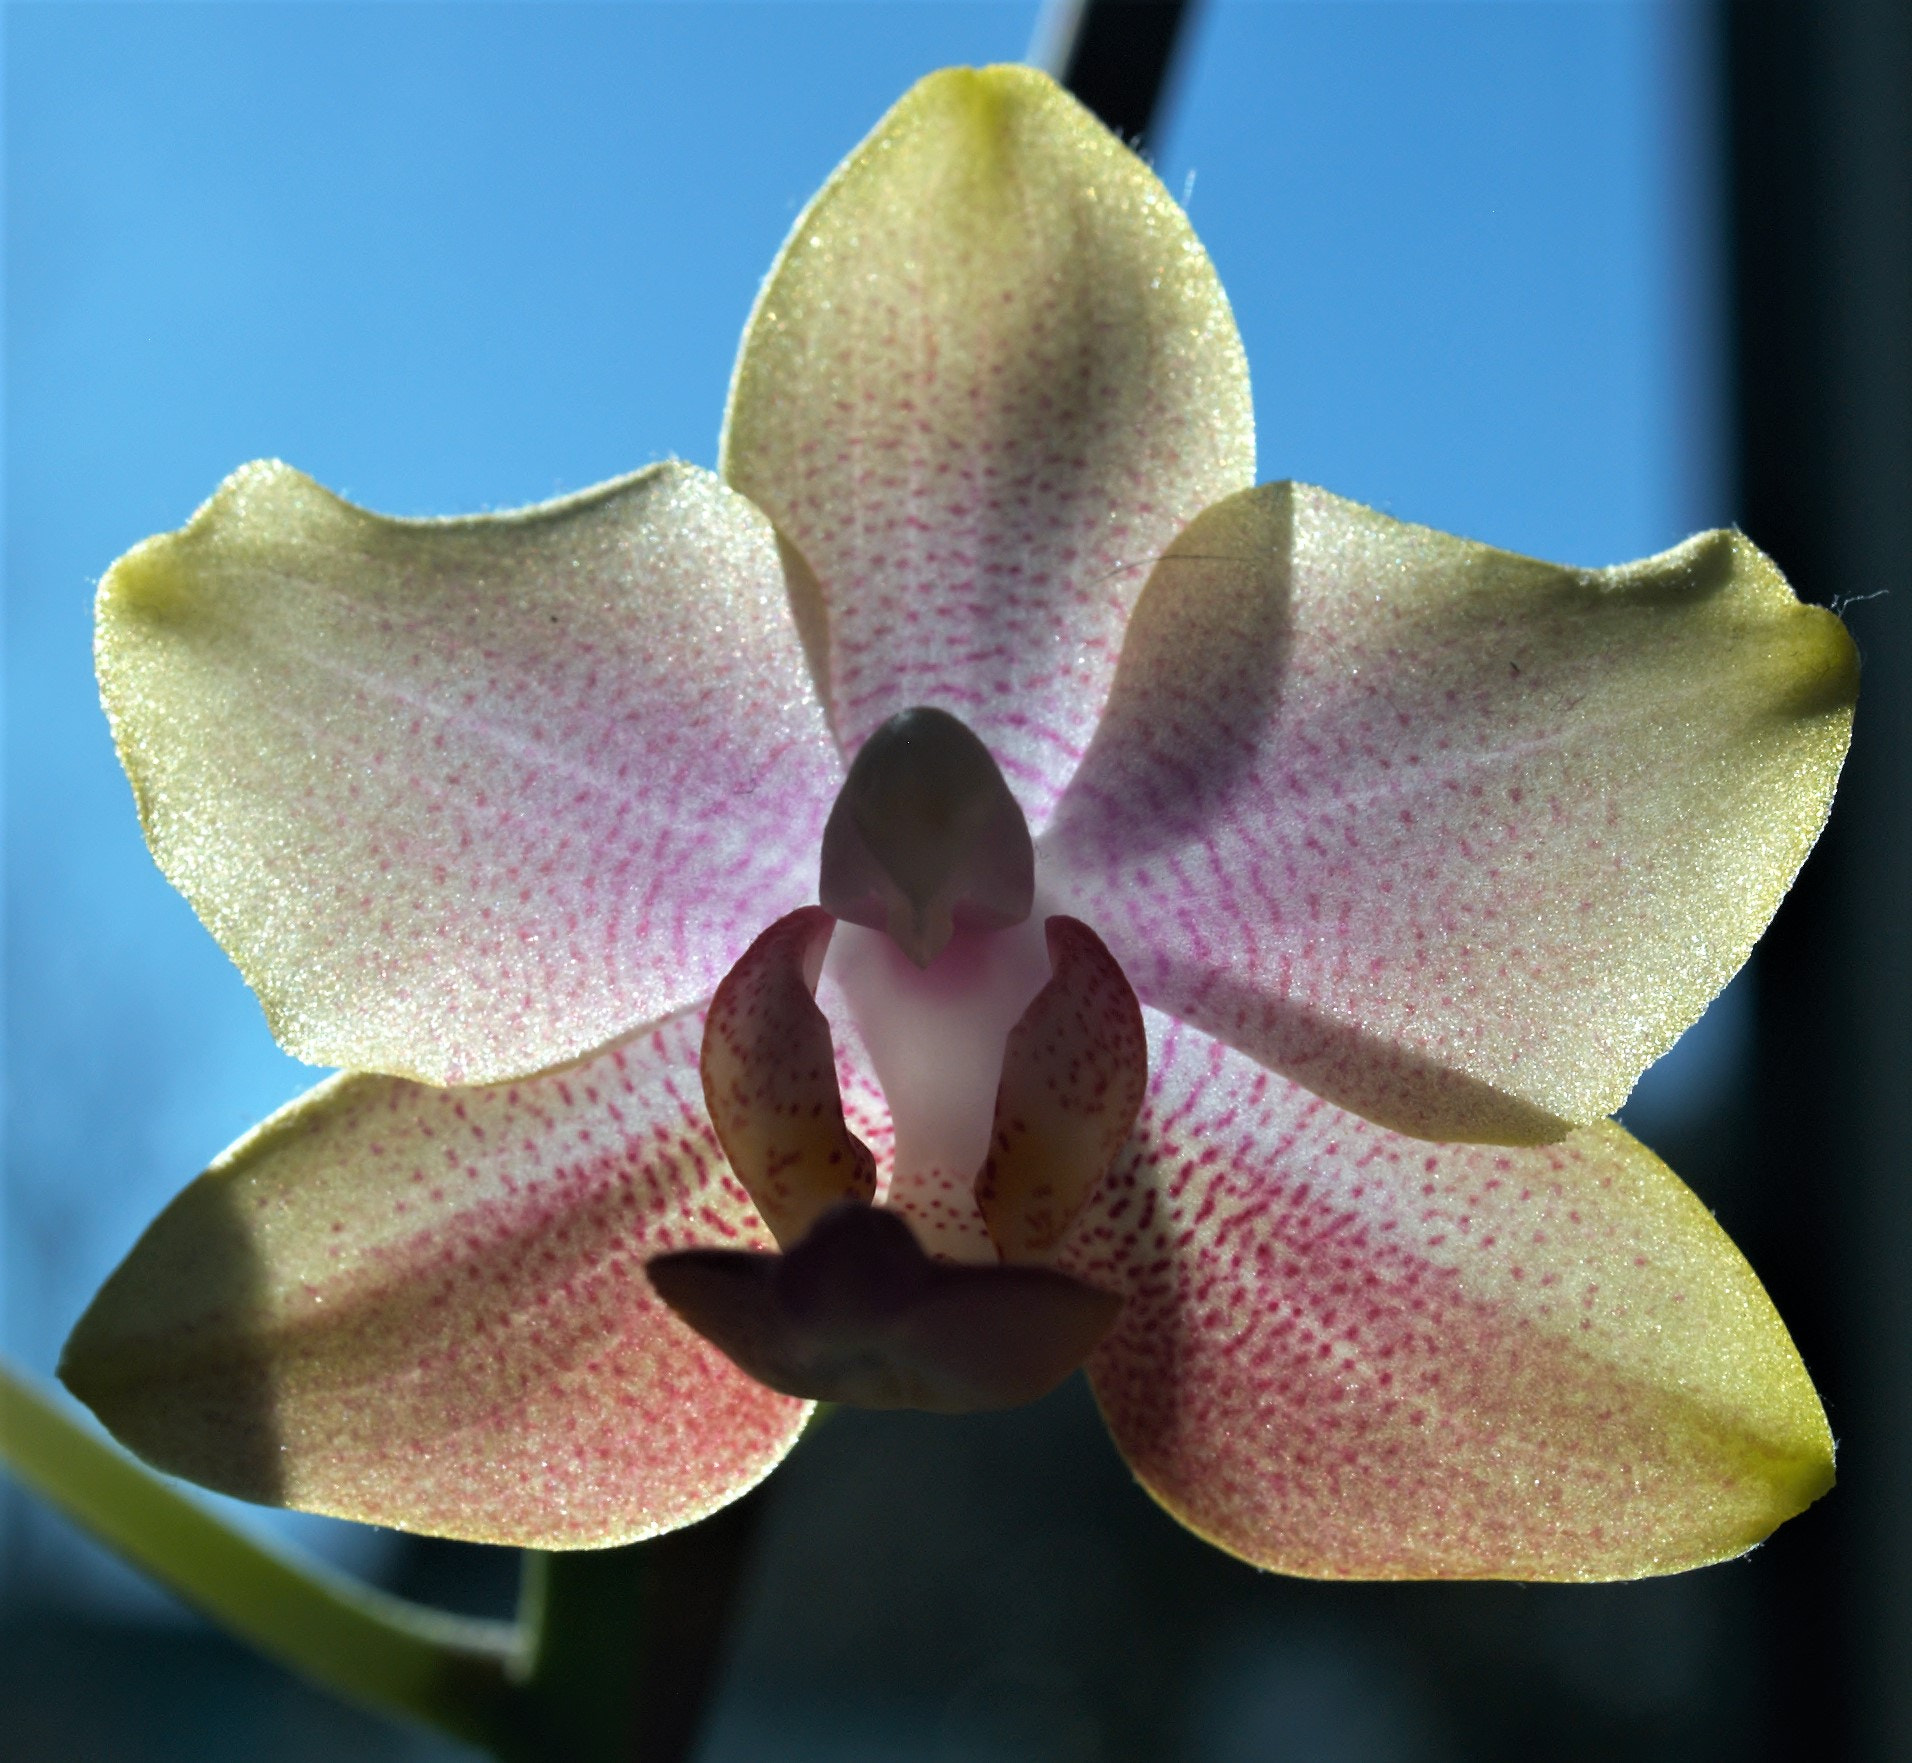 Olympus E-1 sample photo. Phalaenopsis photography